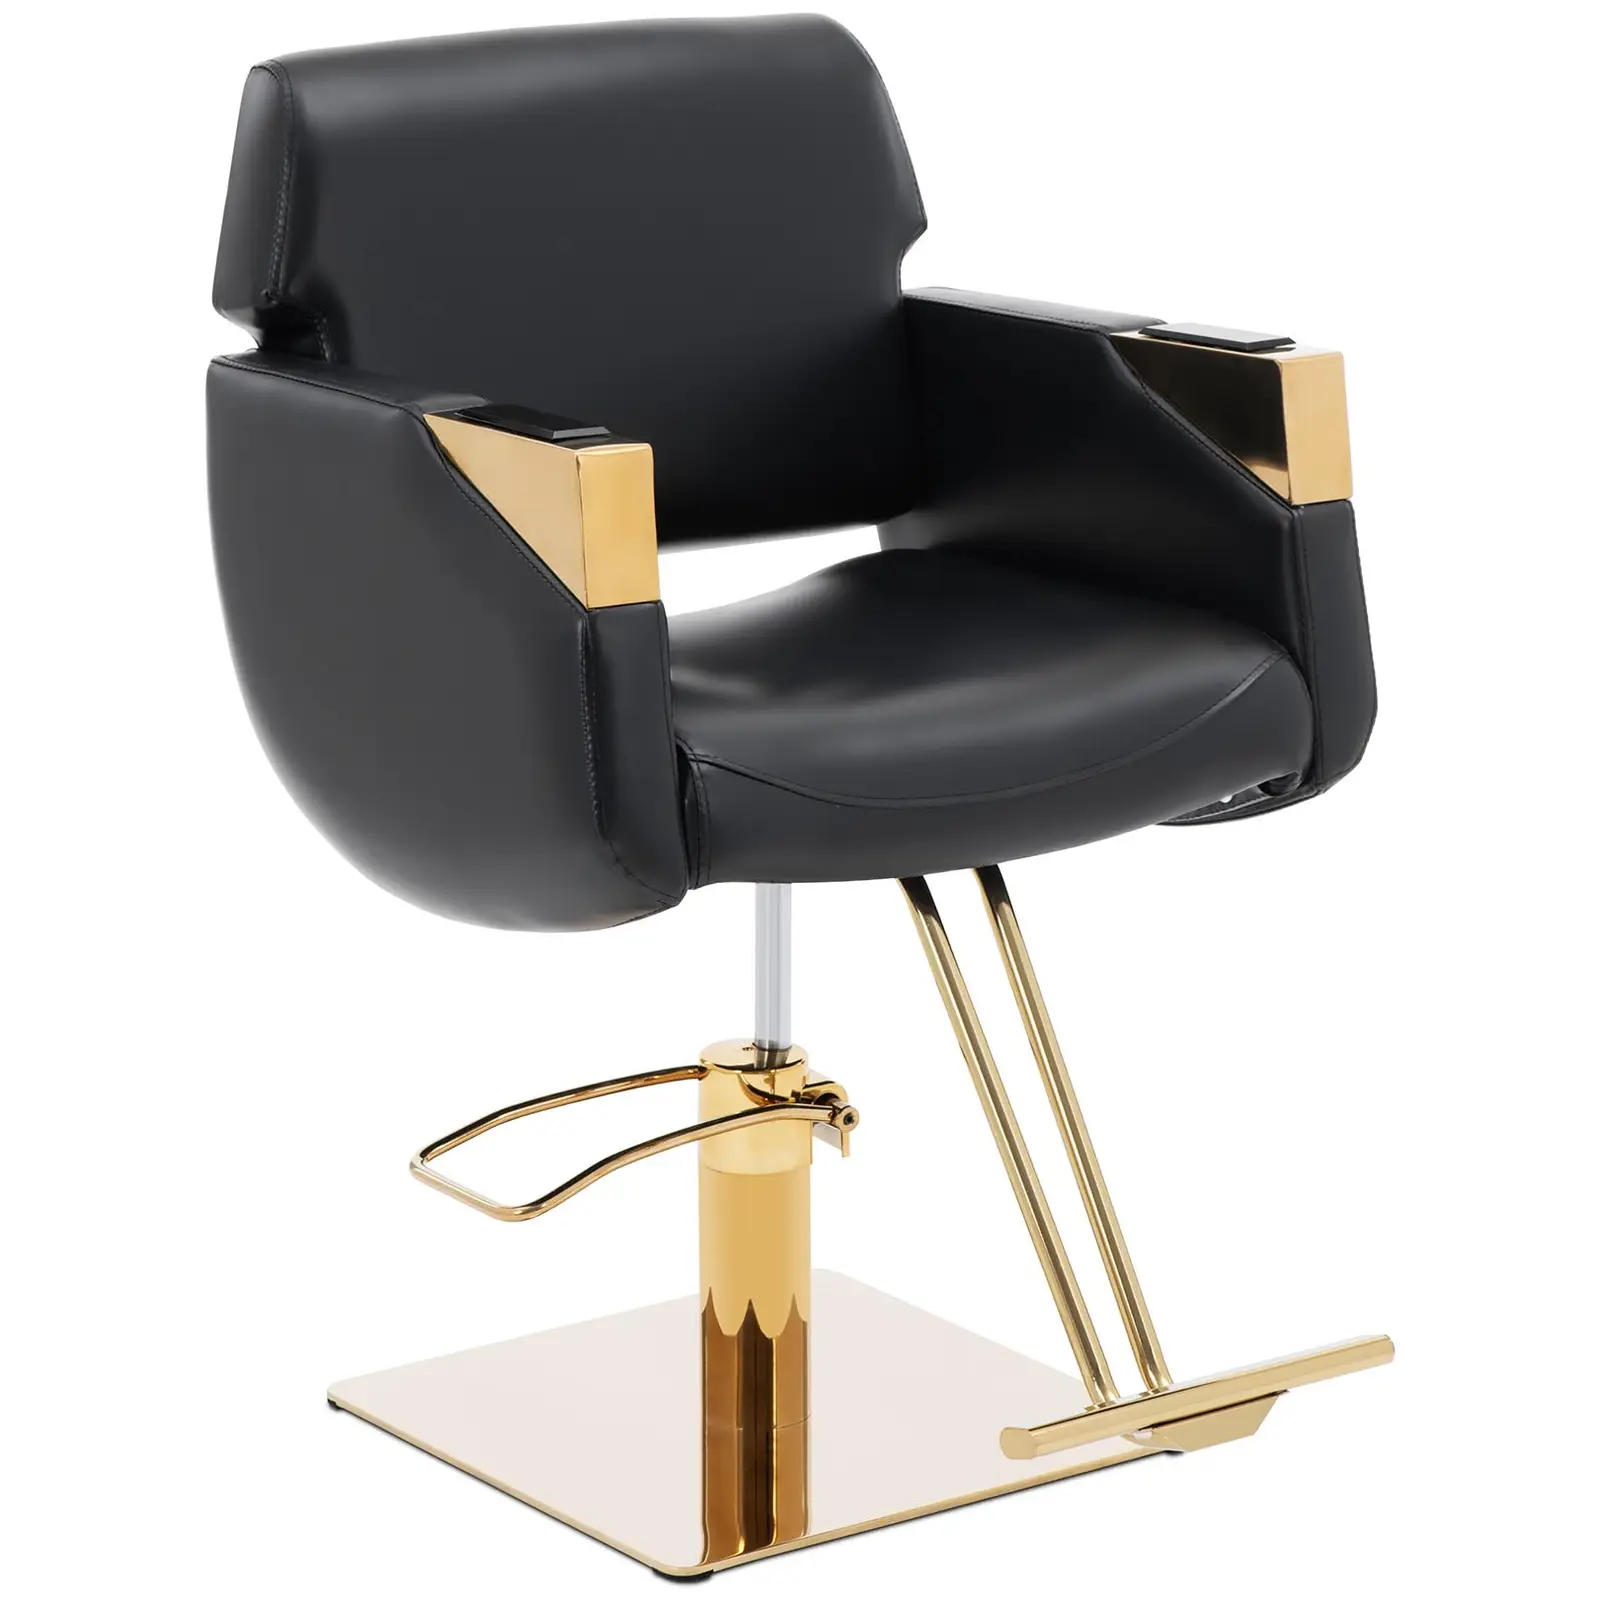 Kappersstoel met voetensteun - 880 - 1030 mm - 200 kg - Zwart/Gouden